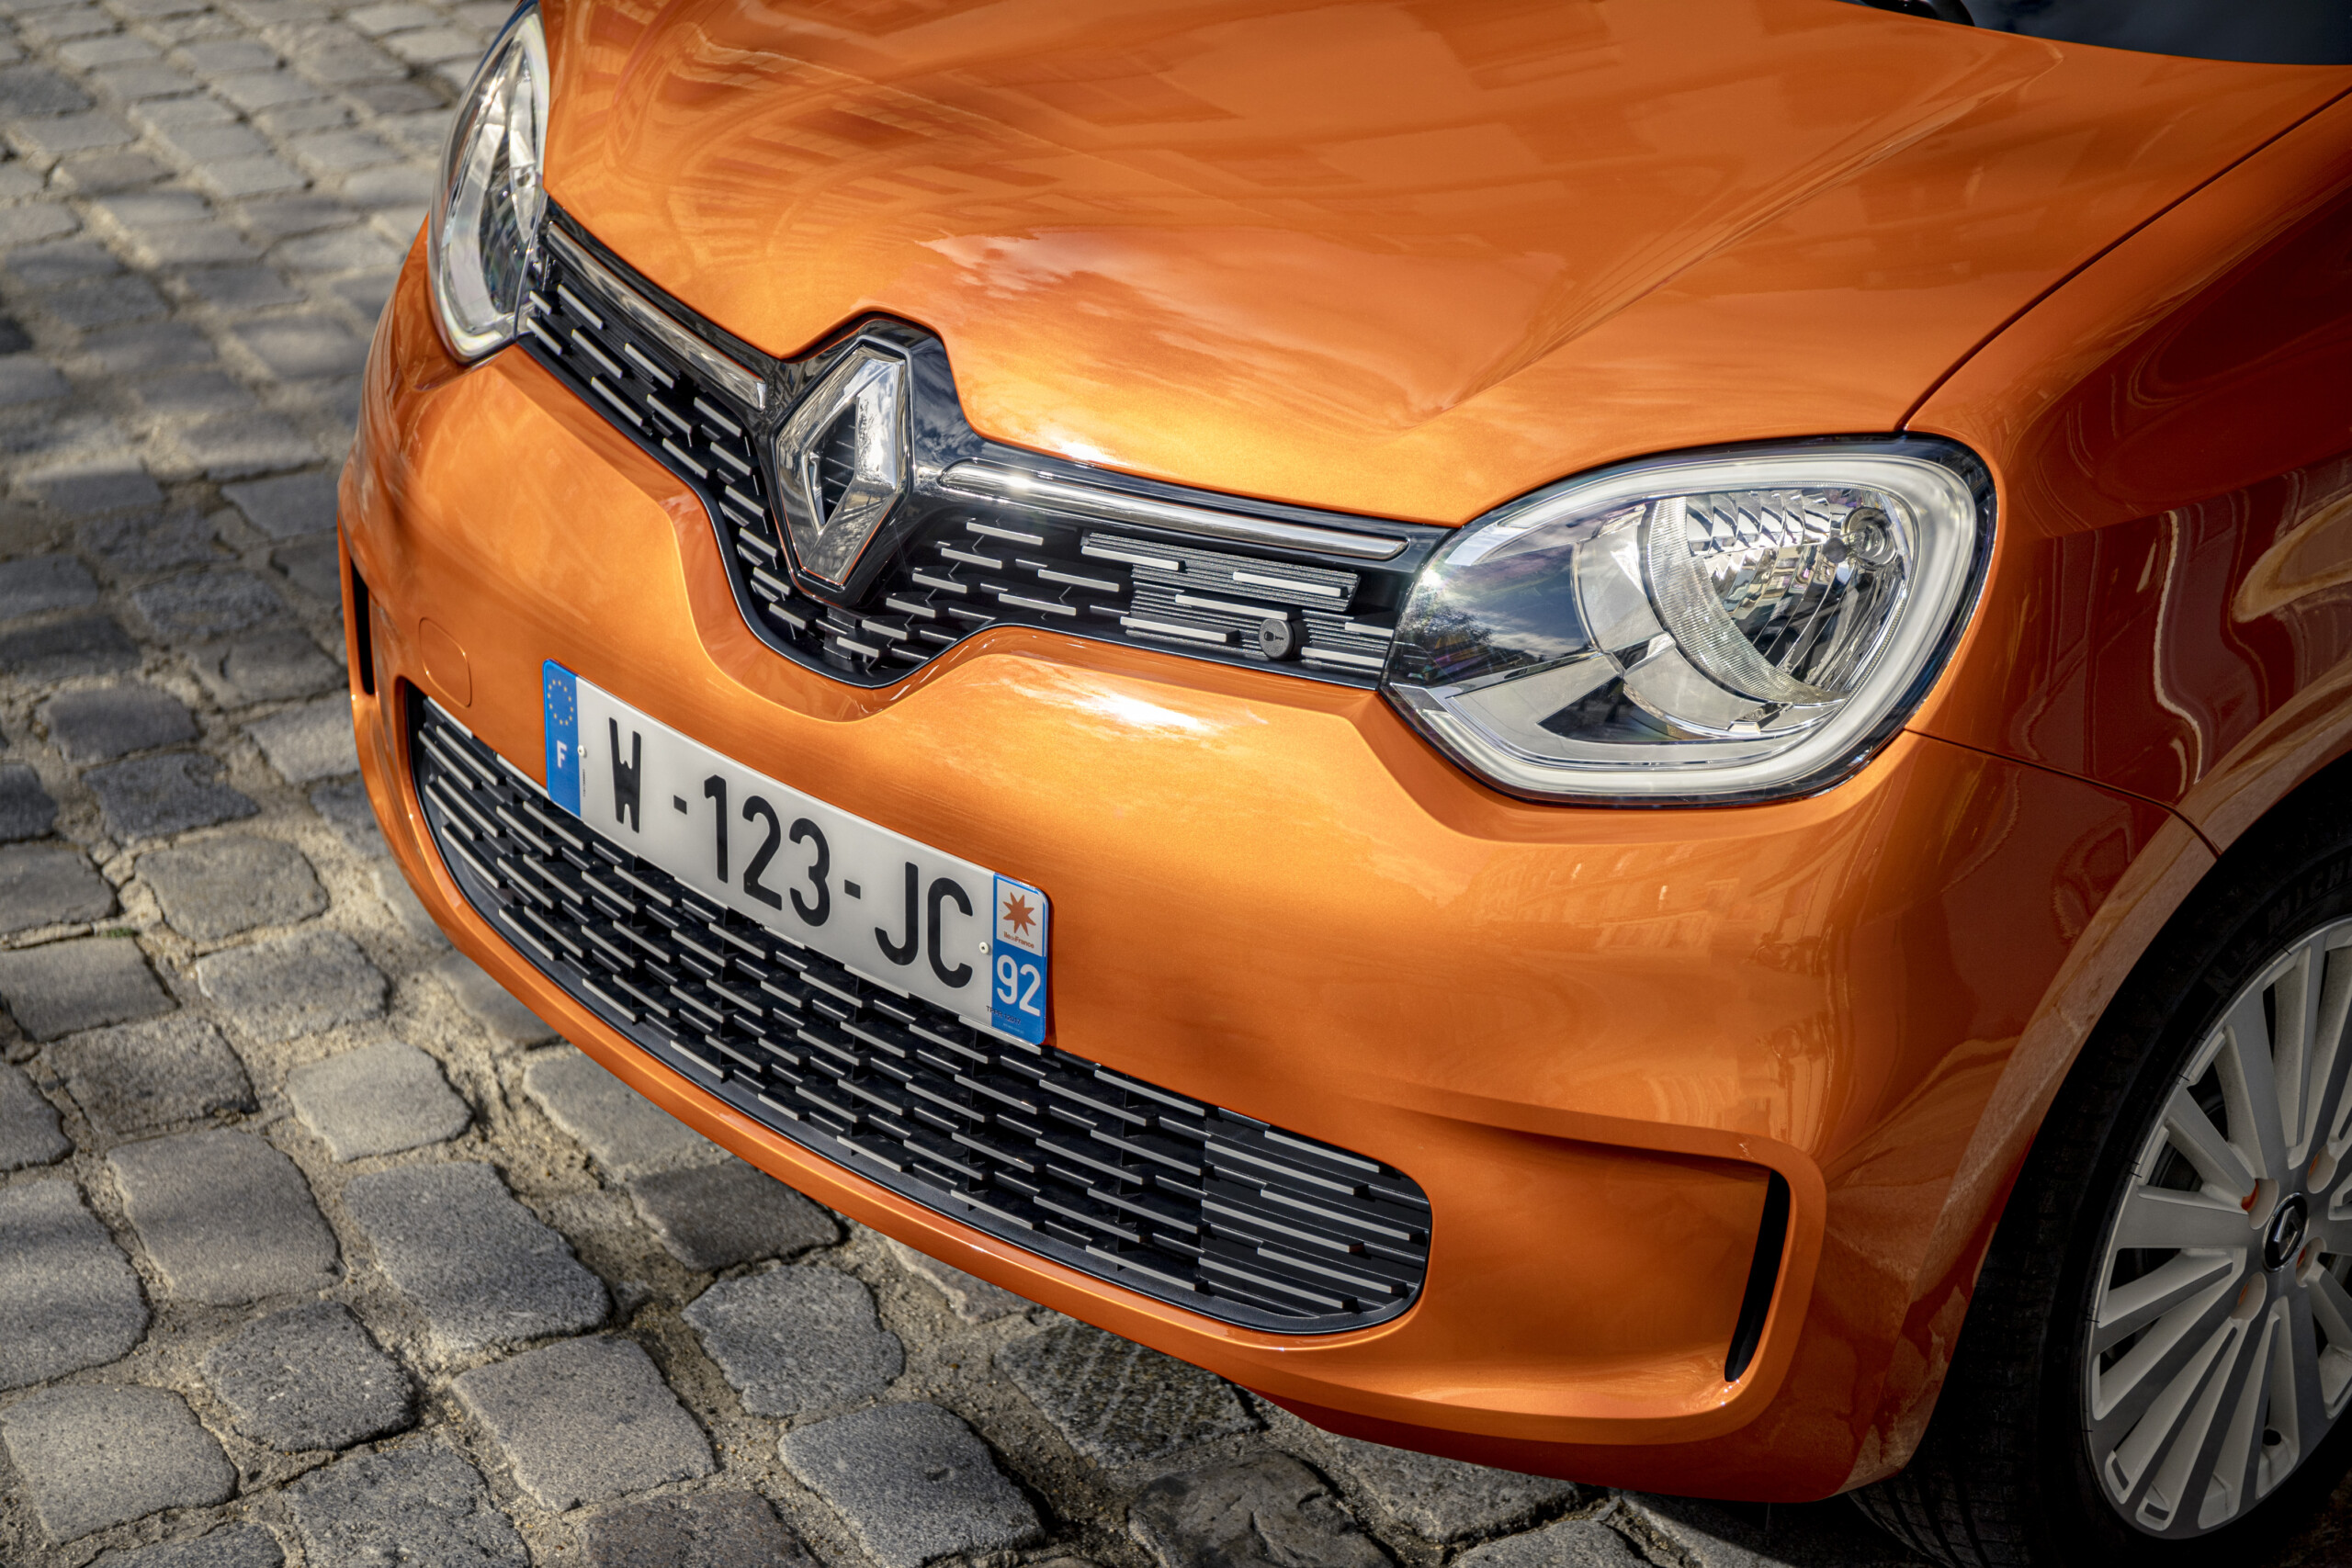 La Renault Twingo Electric // Source : Jean-Brice Lemal pour Renault France